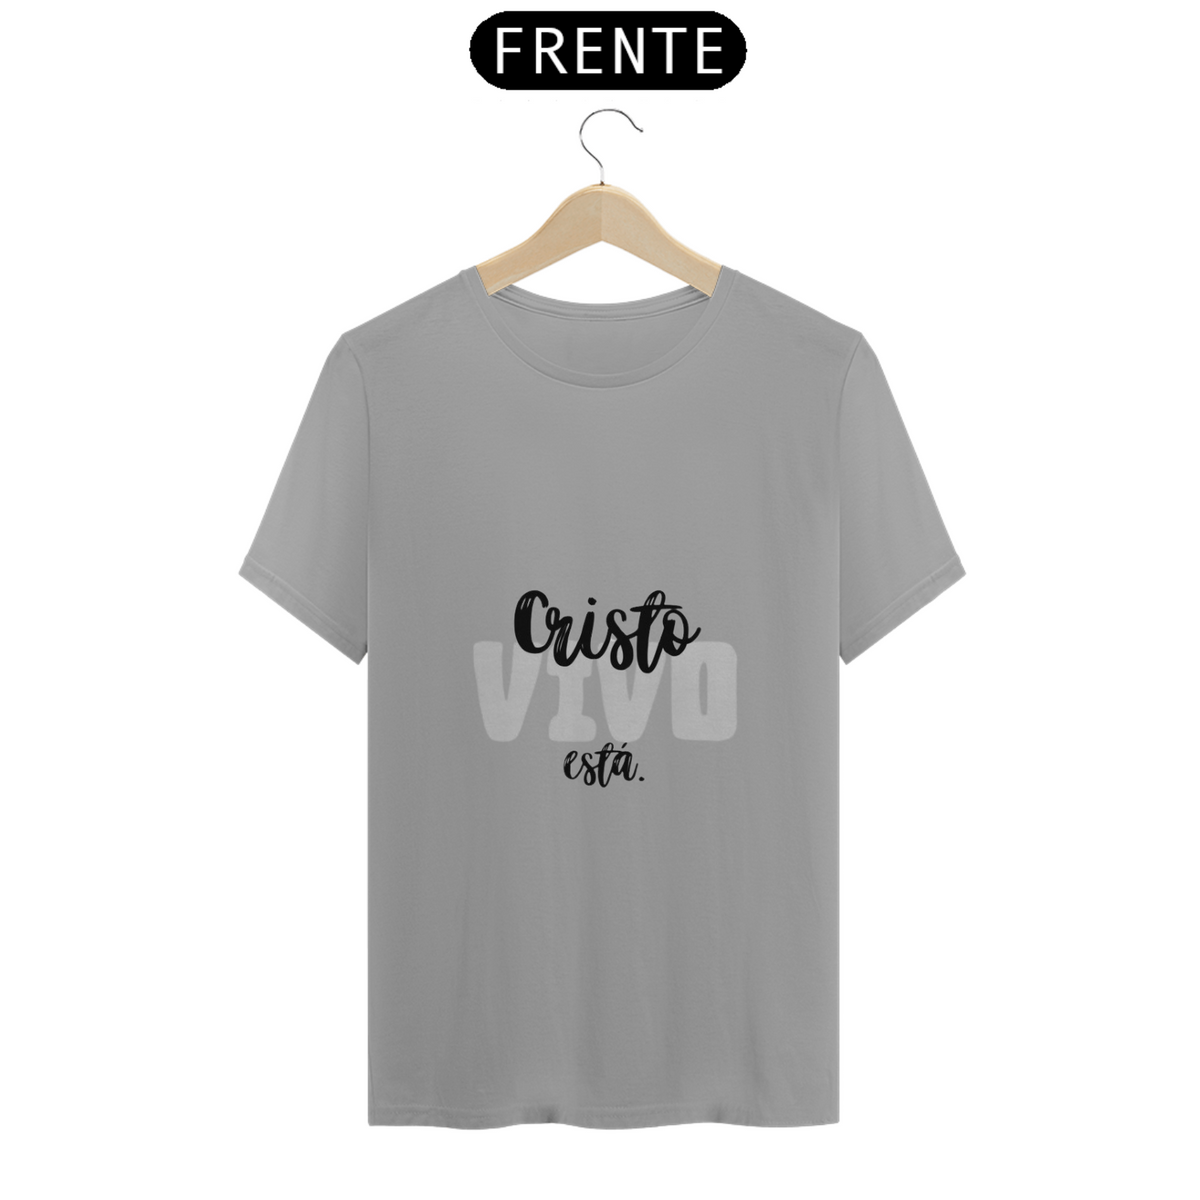 Nome do produto: Camisa T-Shirt rk5